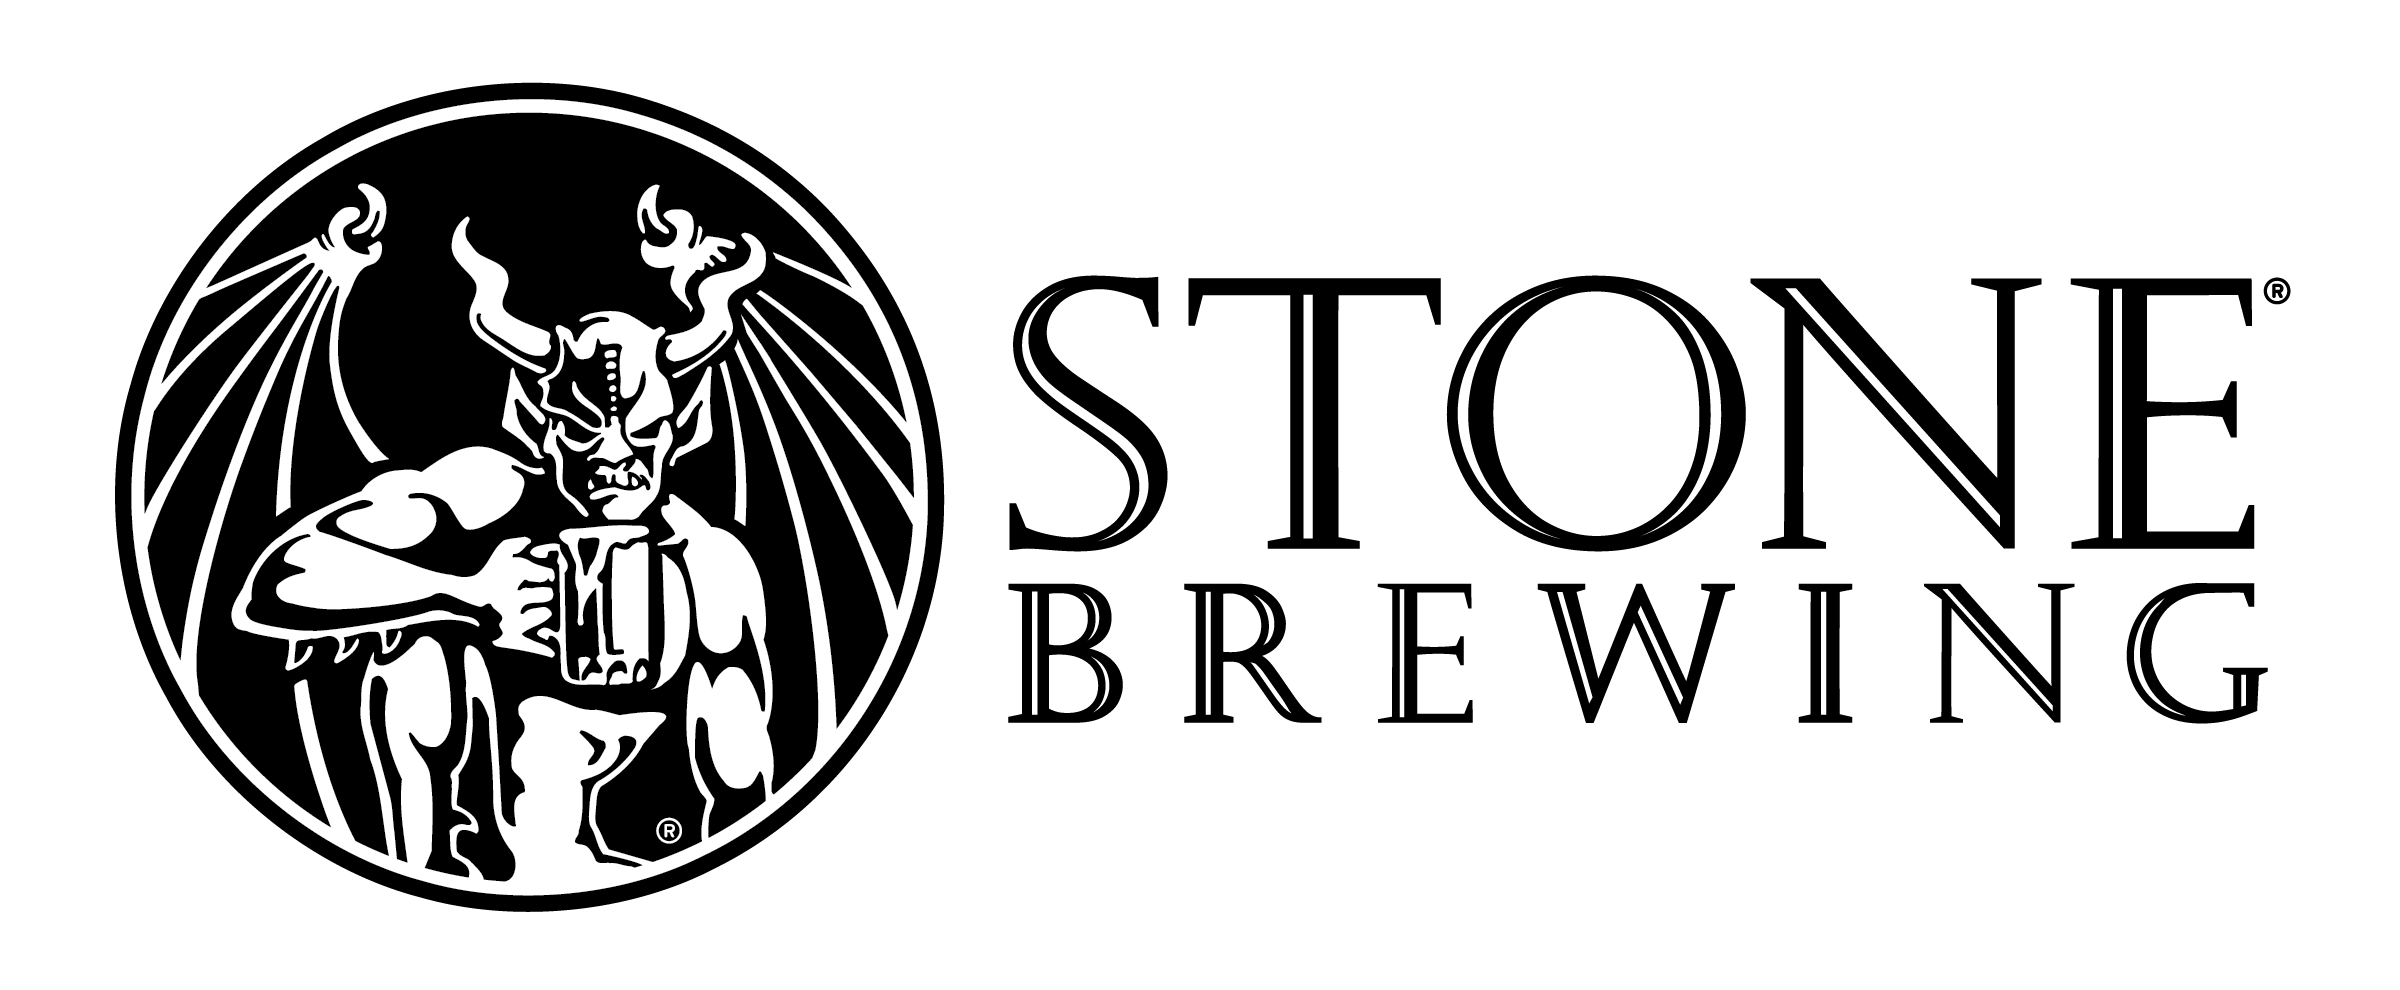 11 5 土 渋谷で Stone Brewing Co 創業周年イベント開催 日本ビアジャーナリスト協会